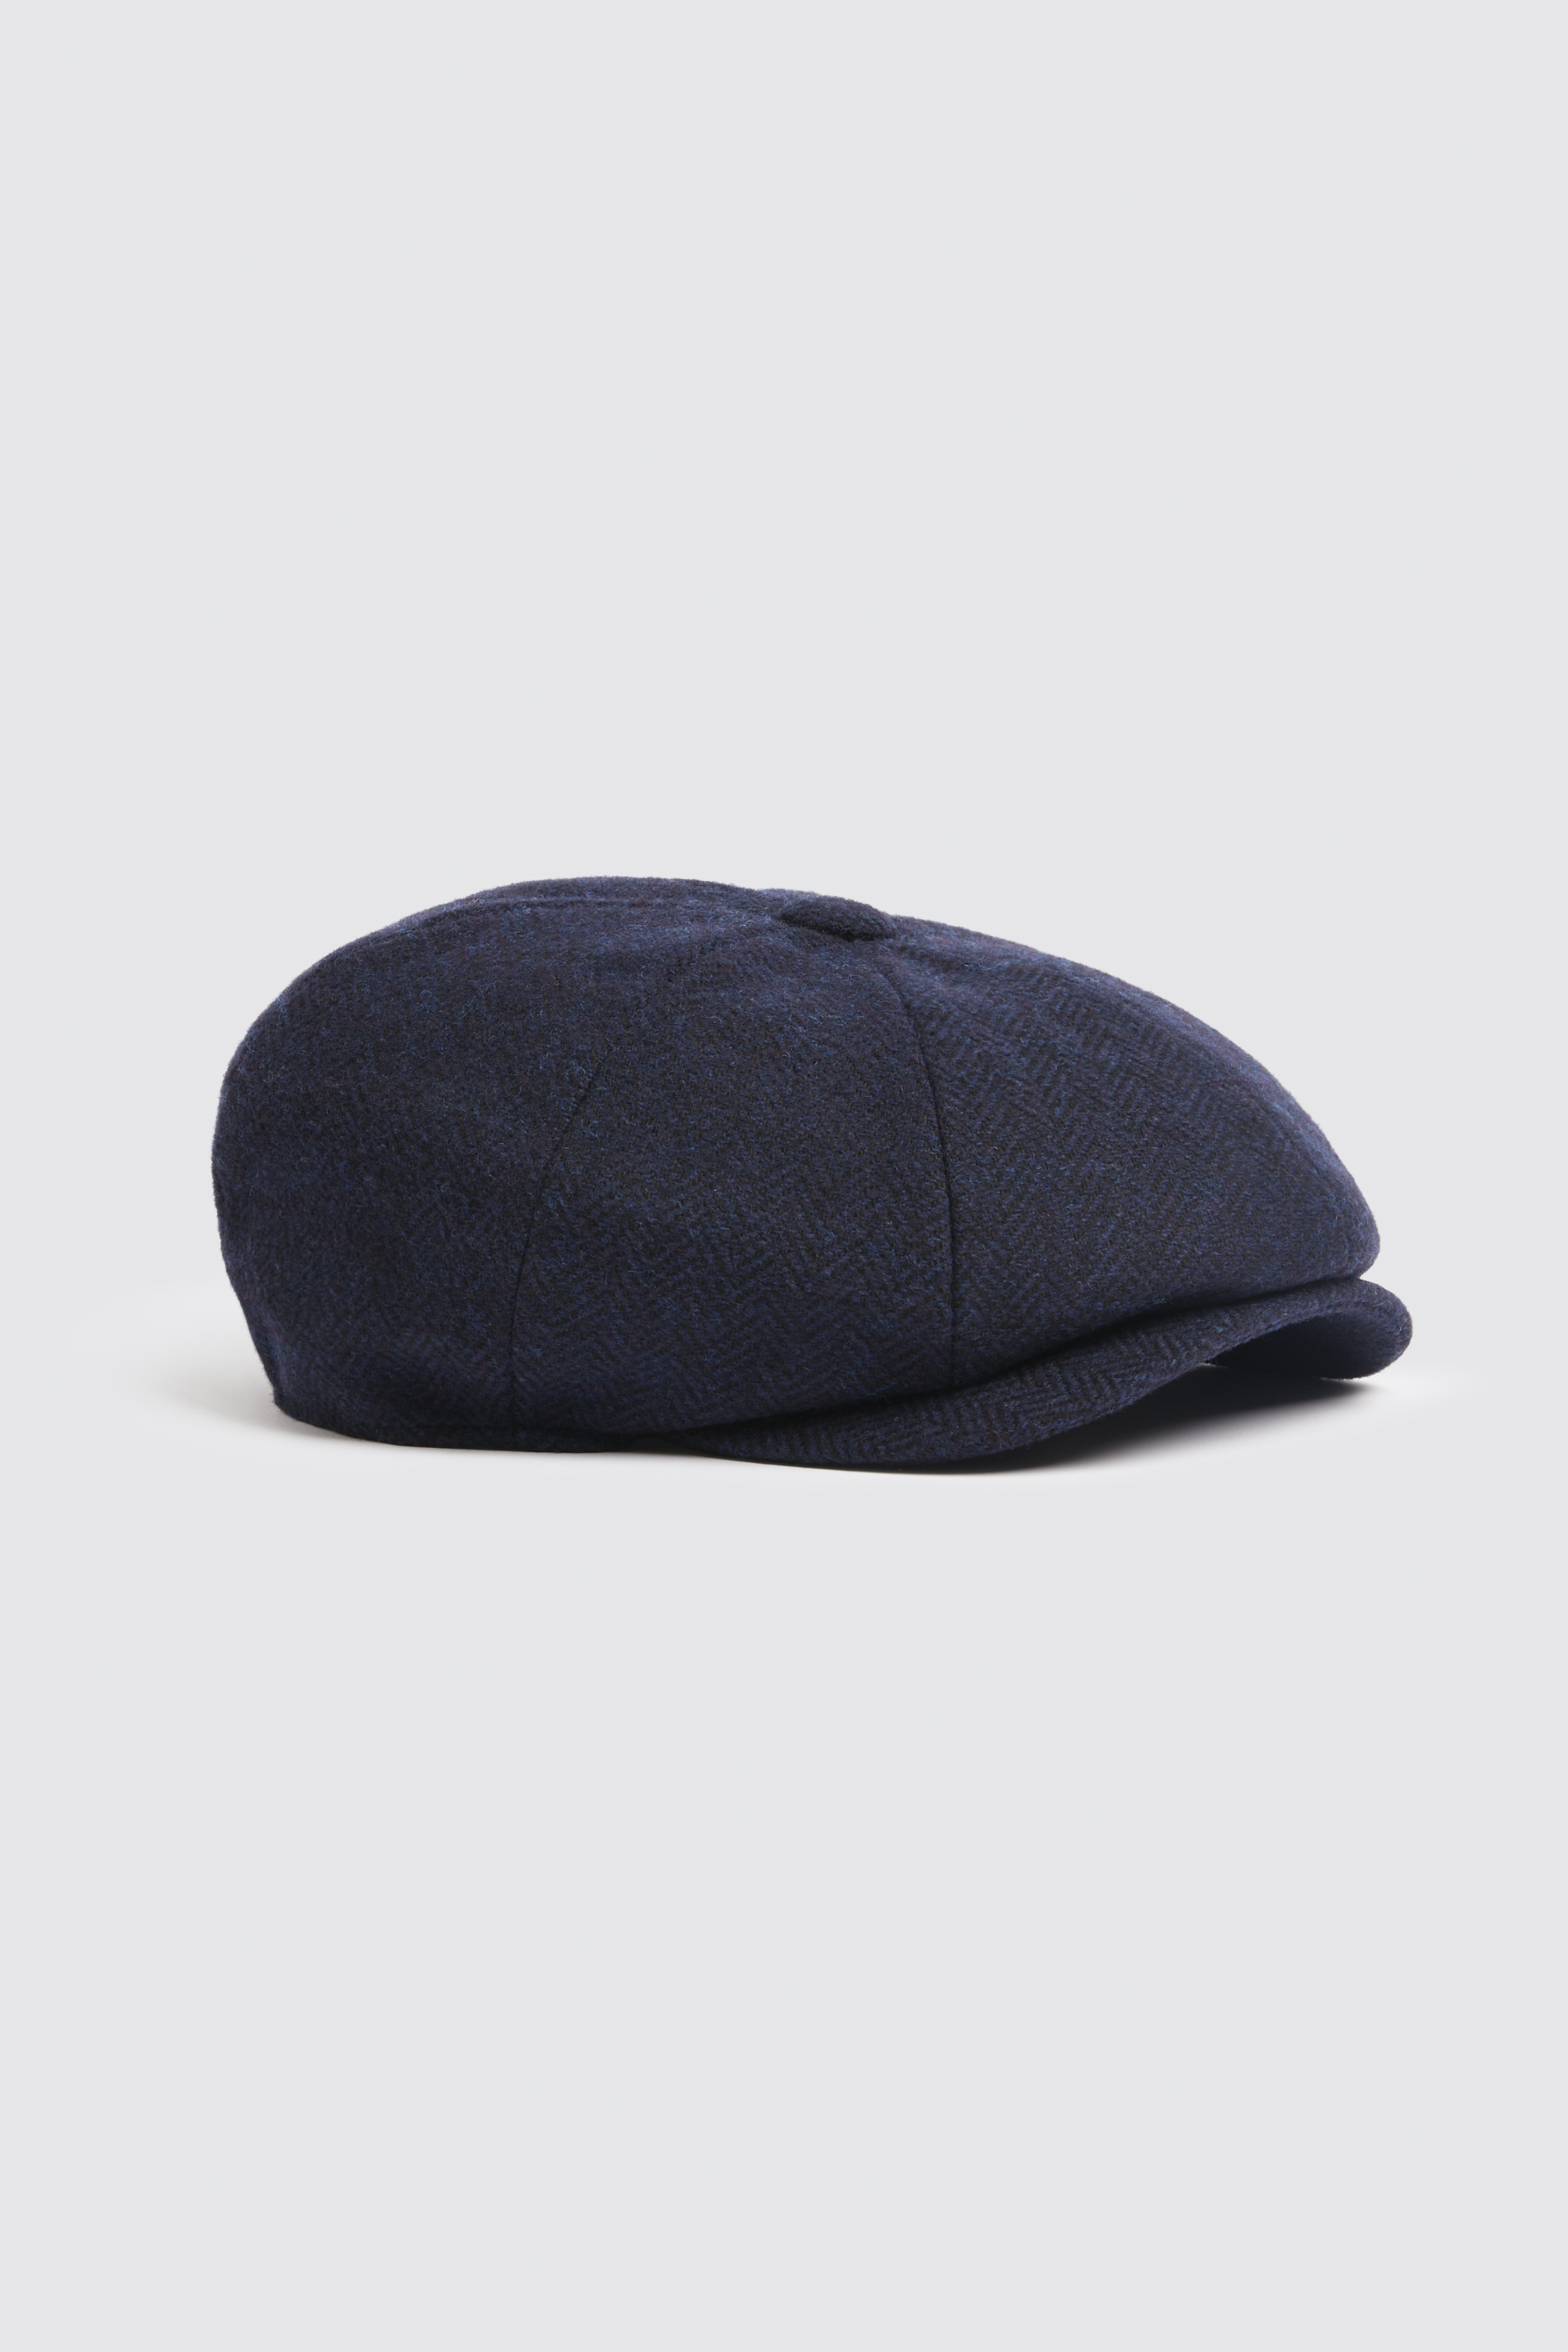 Nouveau Homme Garçons Baker Boy Hat Newsboy Flat Cap Gris Marron S M L XL 2XL Herringbone 